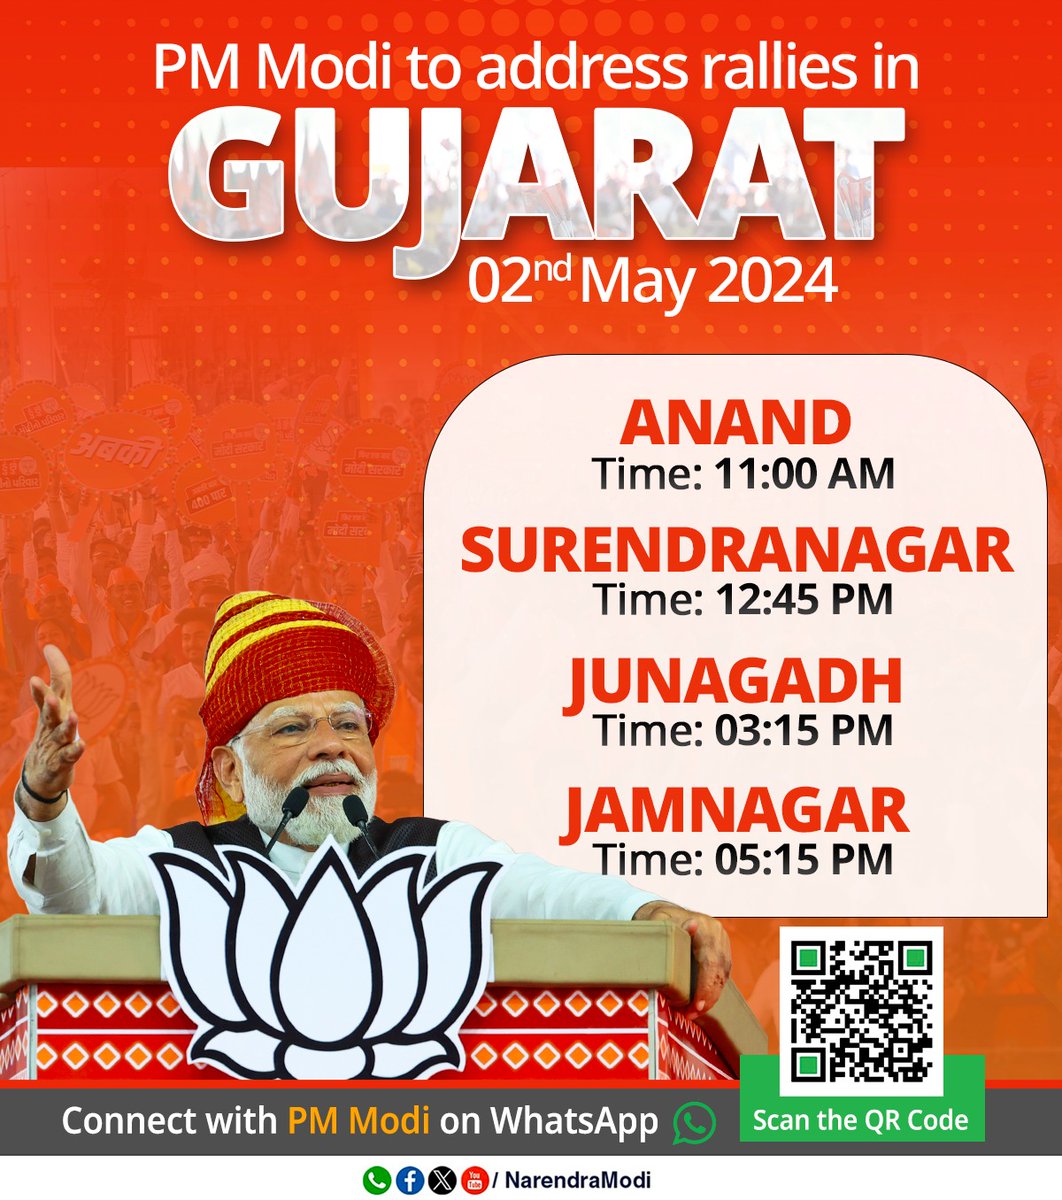 Do watch PM @narendramodi's campaign in Gujarat tomorrow!